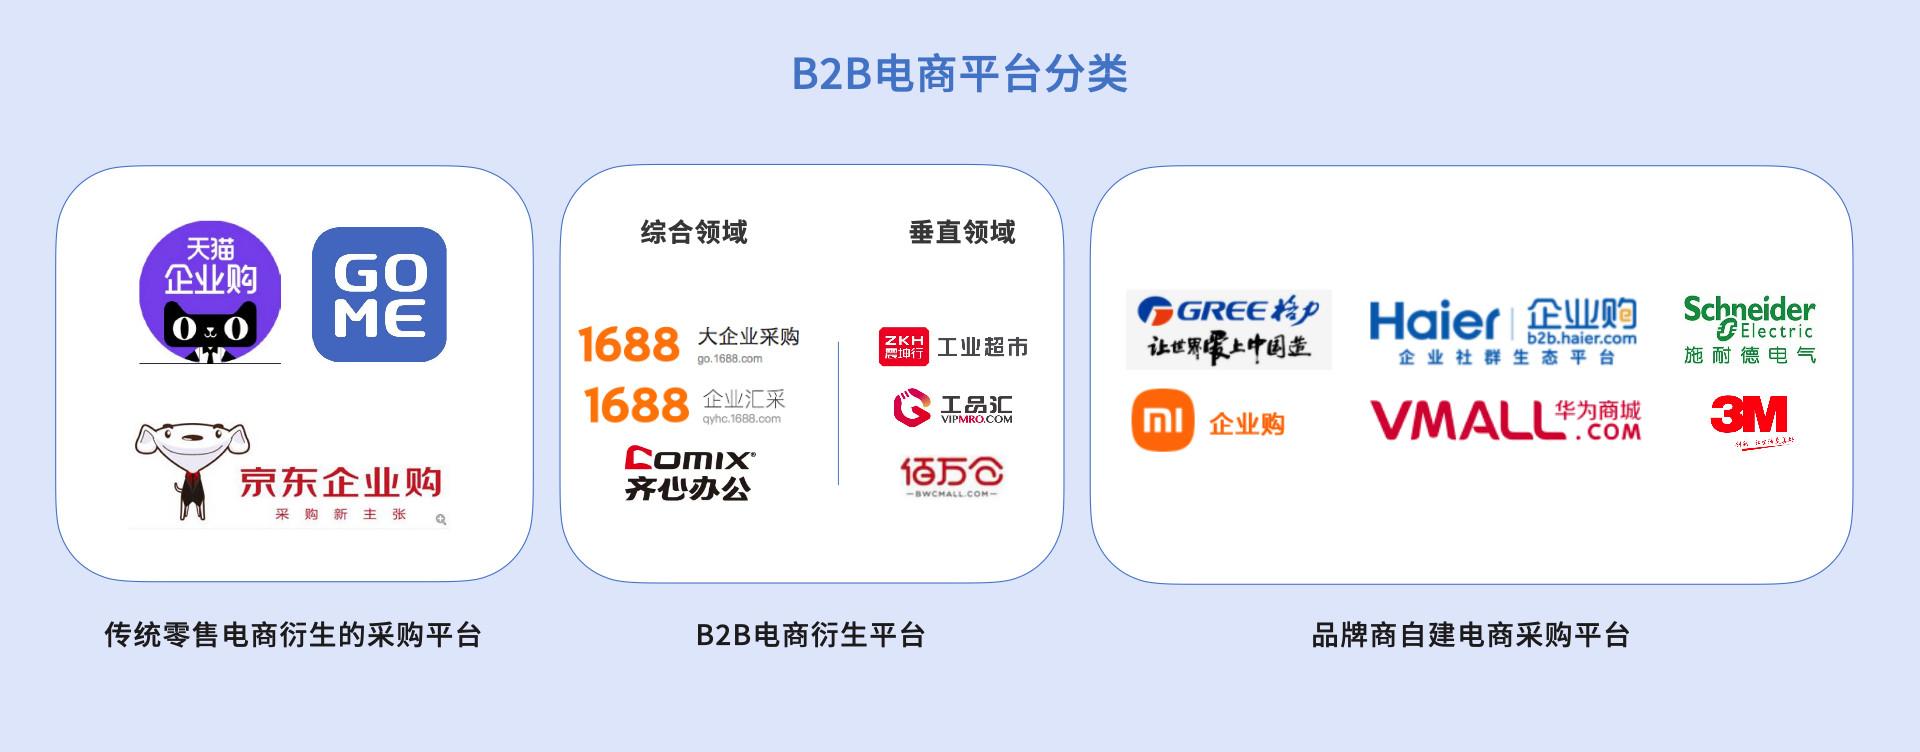 b2b电商最佳实践(一)纵览中国b2b电商市场, 启航企业数字化转型